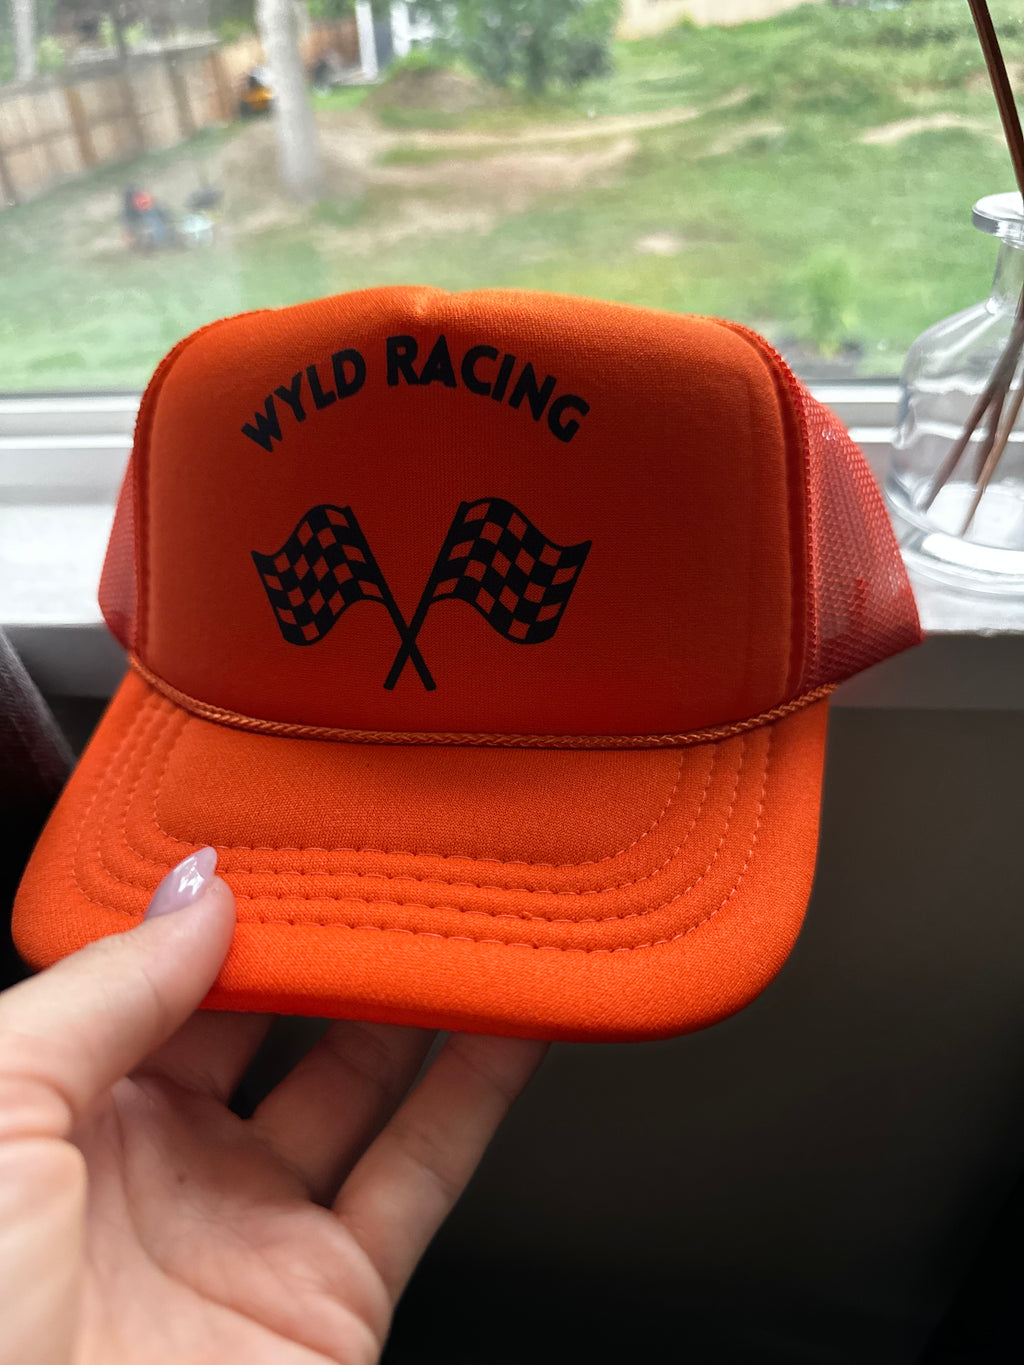 Wyld Racing